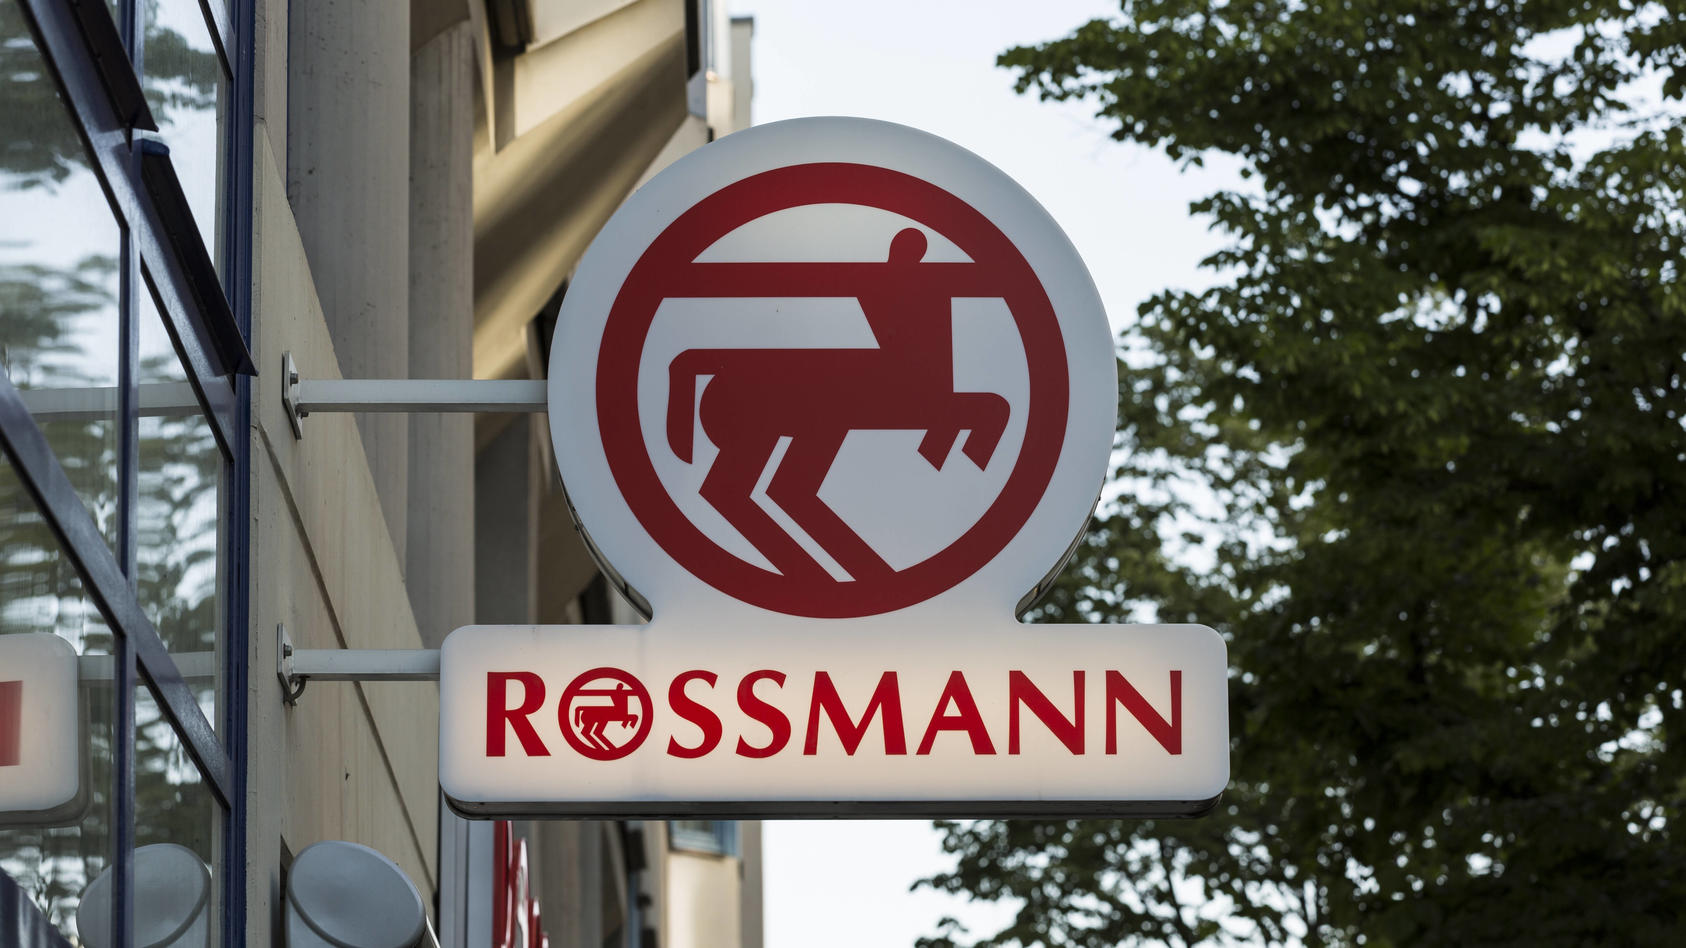 rossmann-in-berlin-rossmann-in-berlin